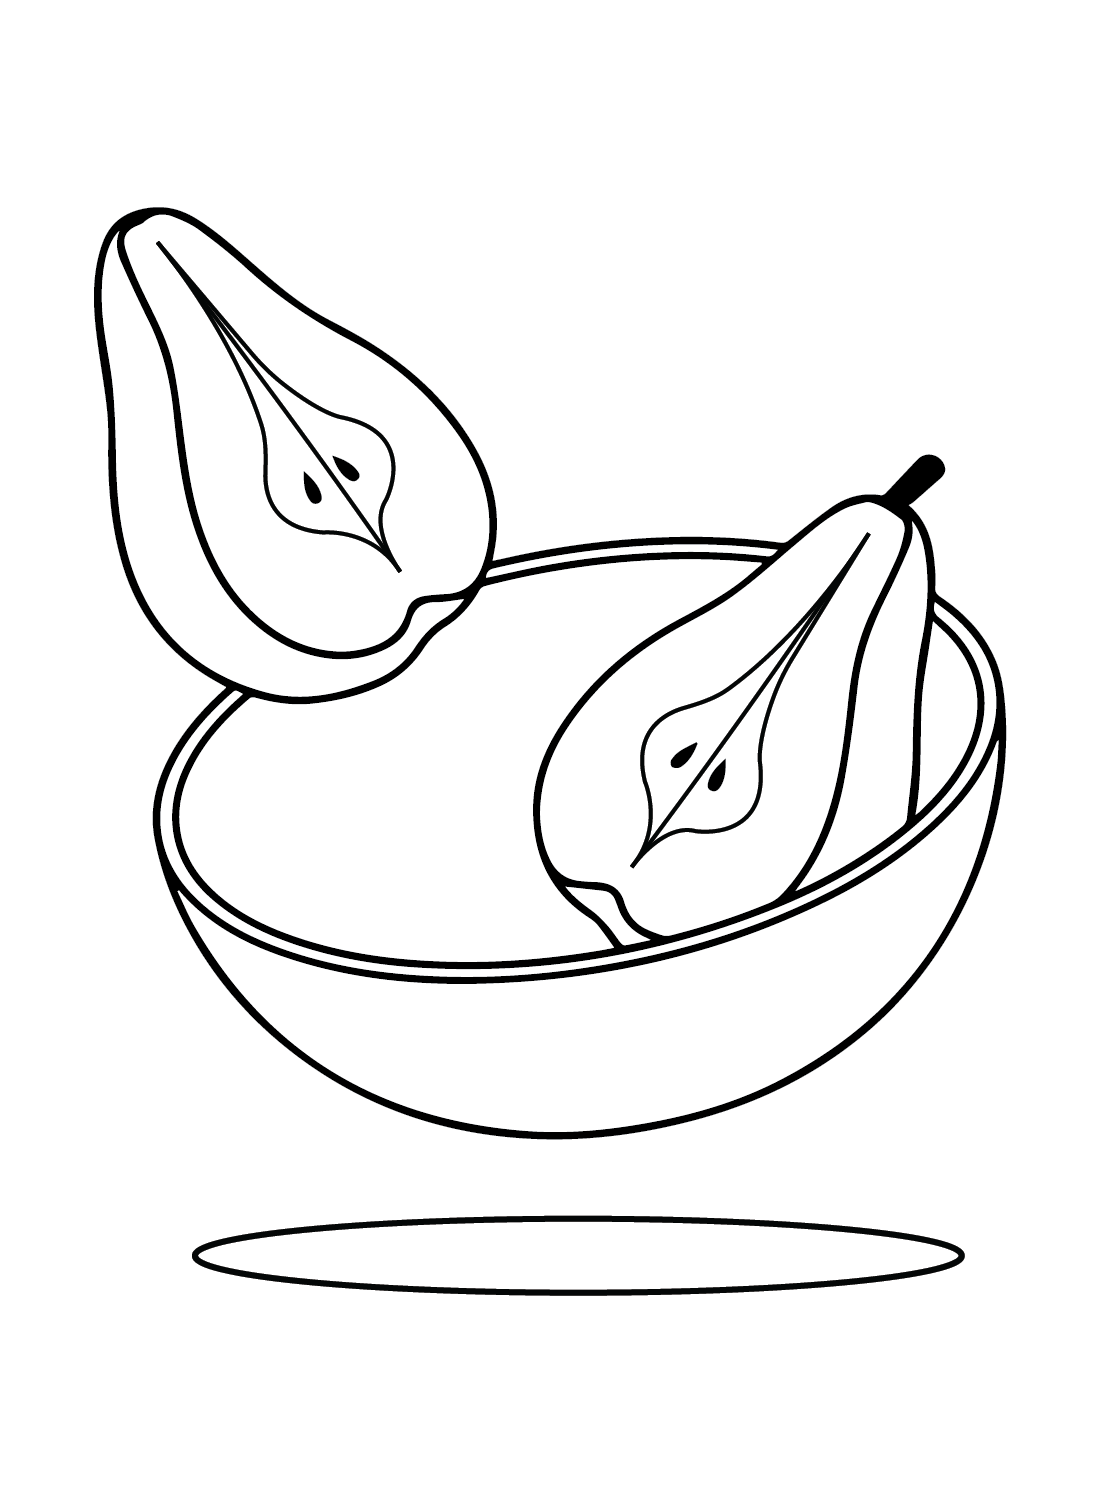 Desenhando peras de peras